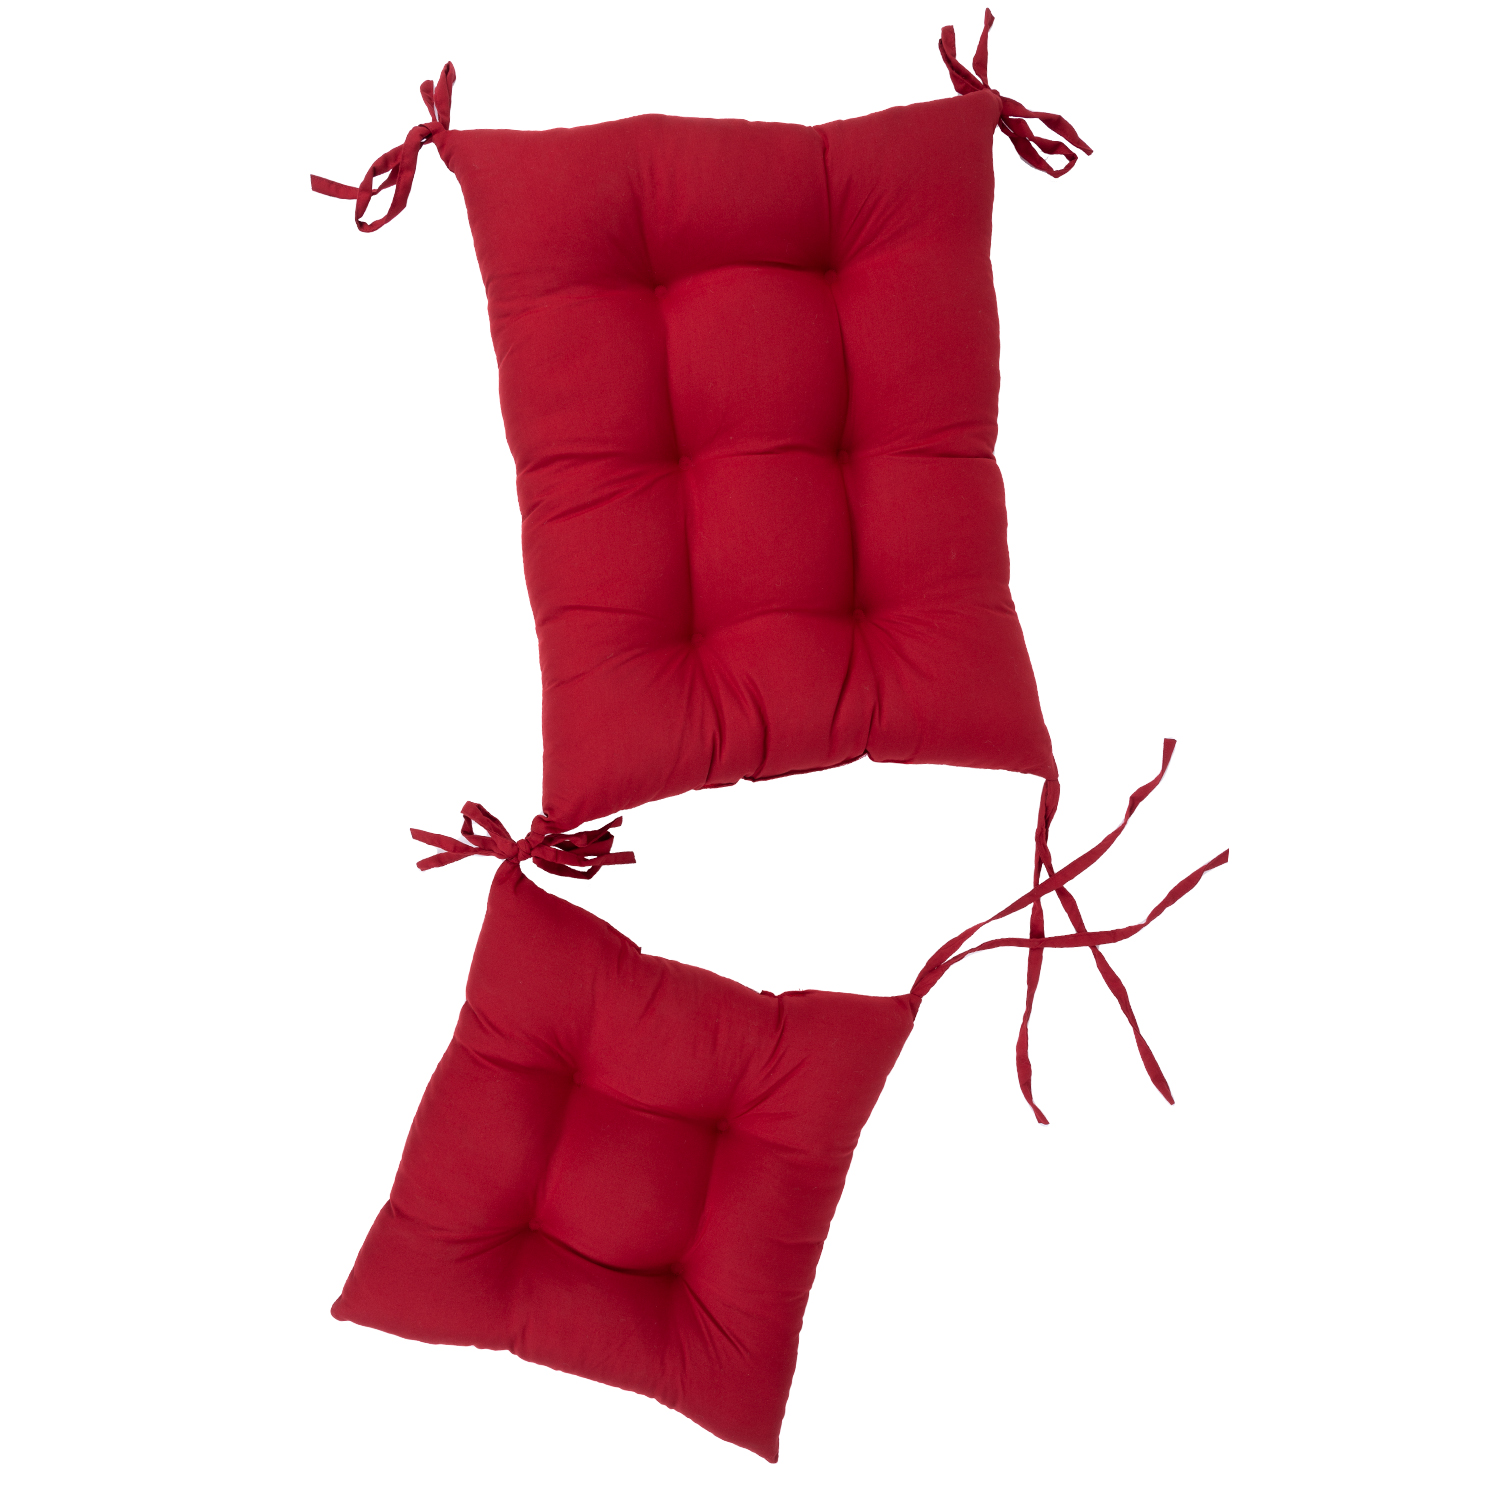 Coussins de chaise berçante à dossier haut - Rouge. Colour: red, Fr